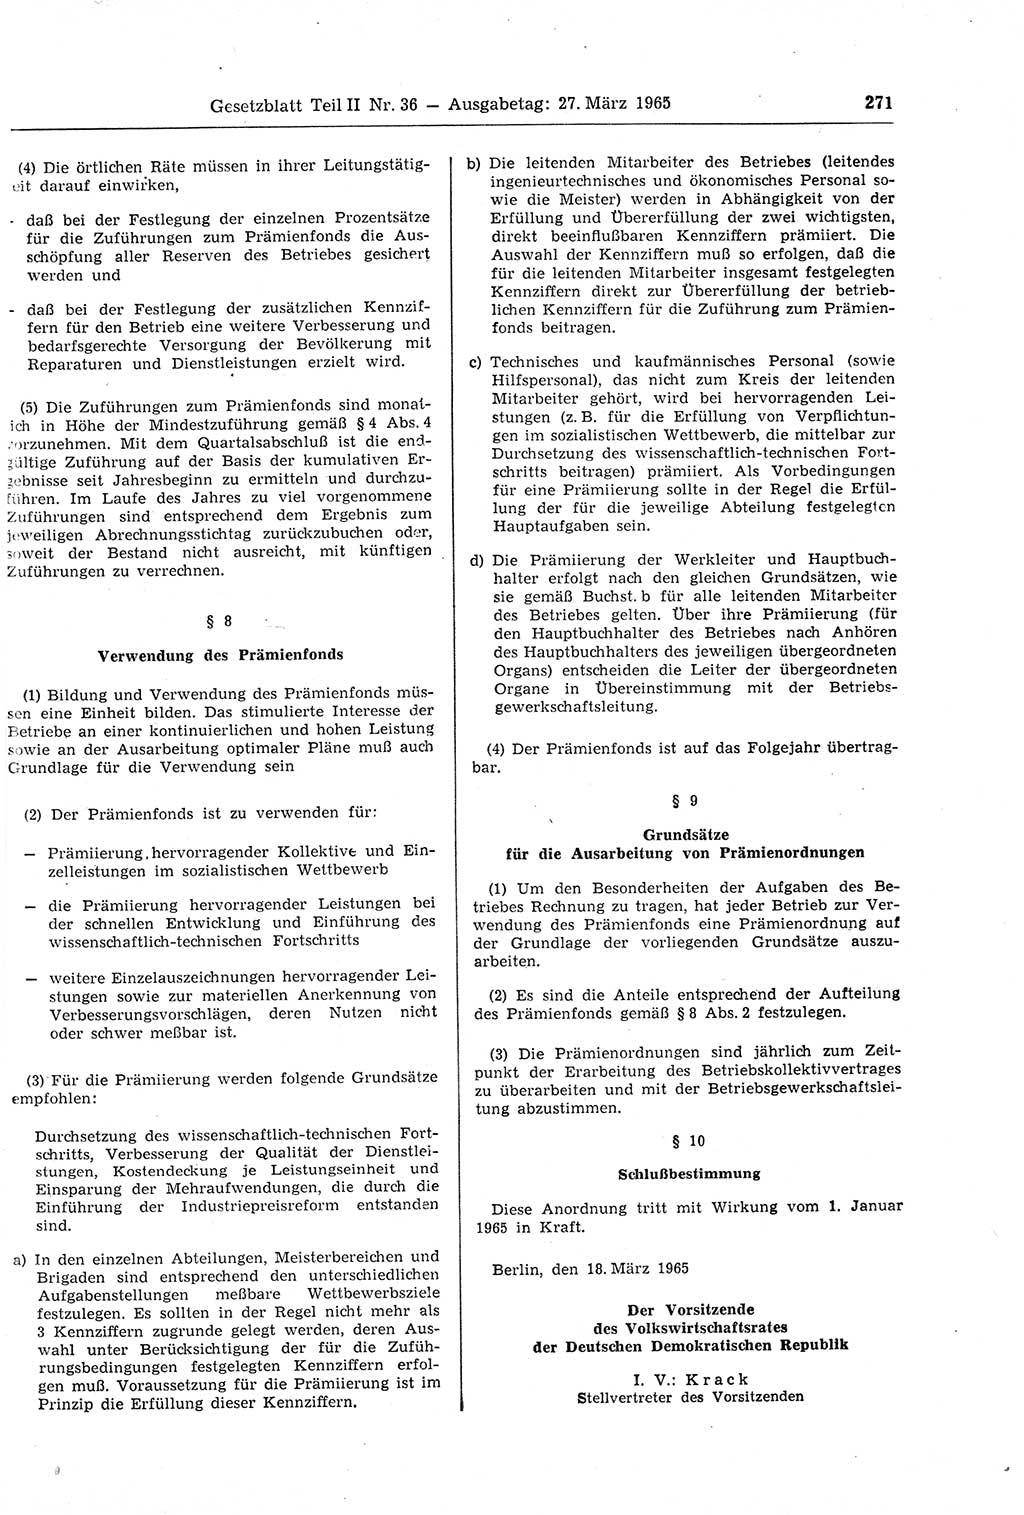 Gesetzblatt (GBl.) der Deutschen Demokratischen Republik (DDR) Teil ⅠⅠ 1965, Seite 271 (GBl. DDR ⅠⅠ 1965, S. 271)